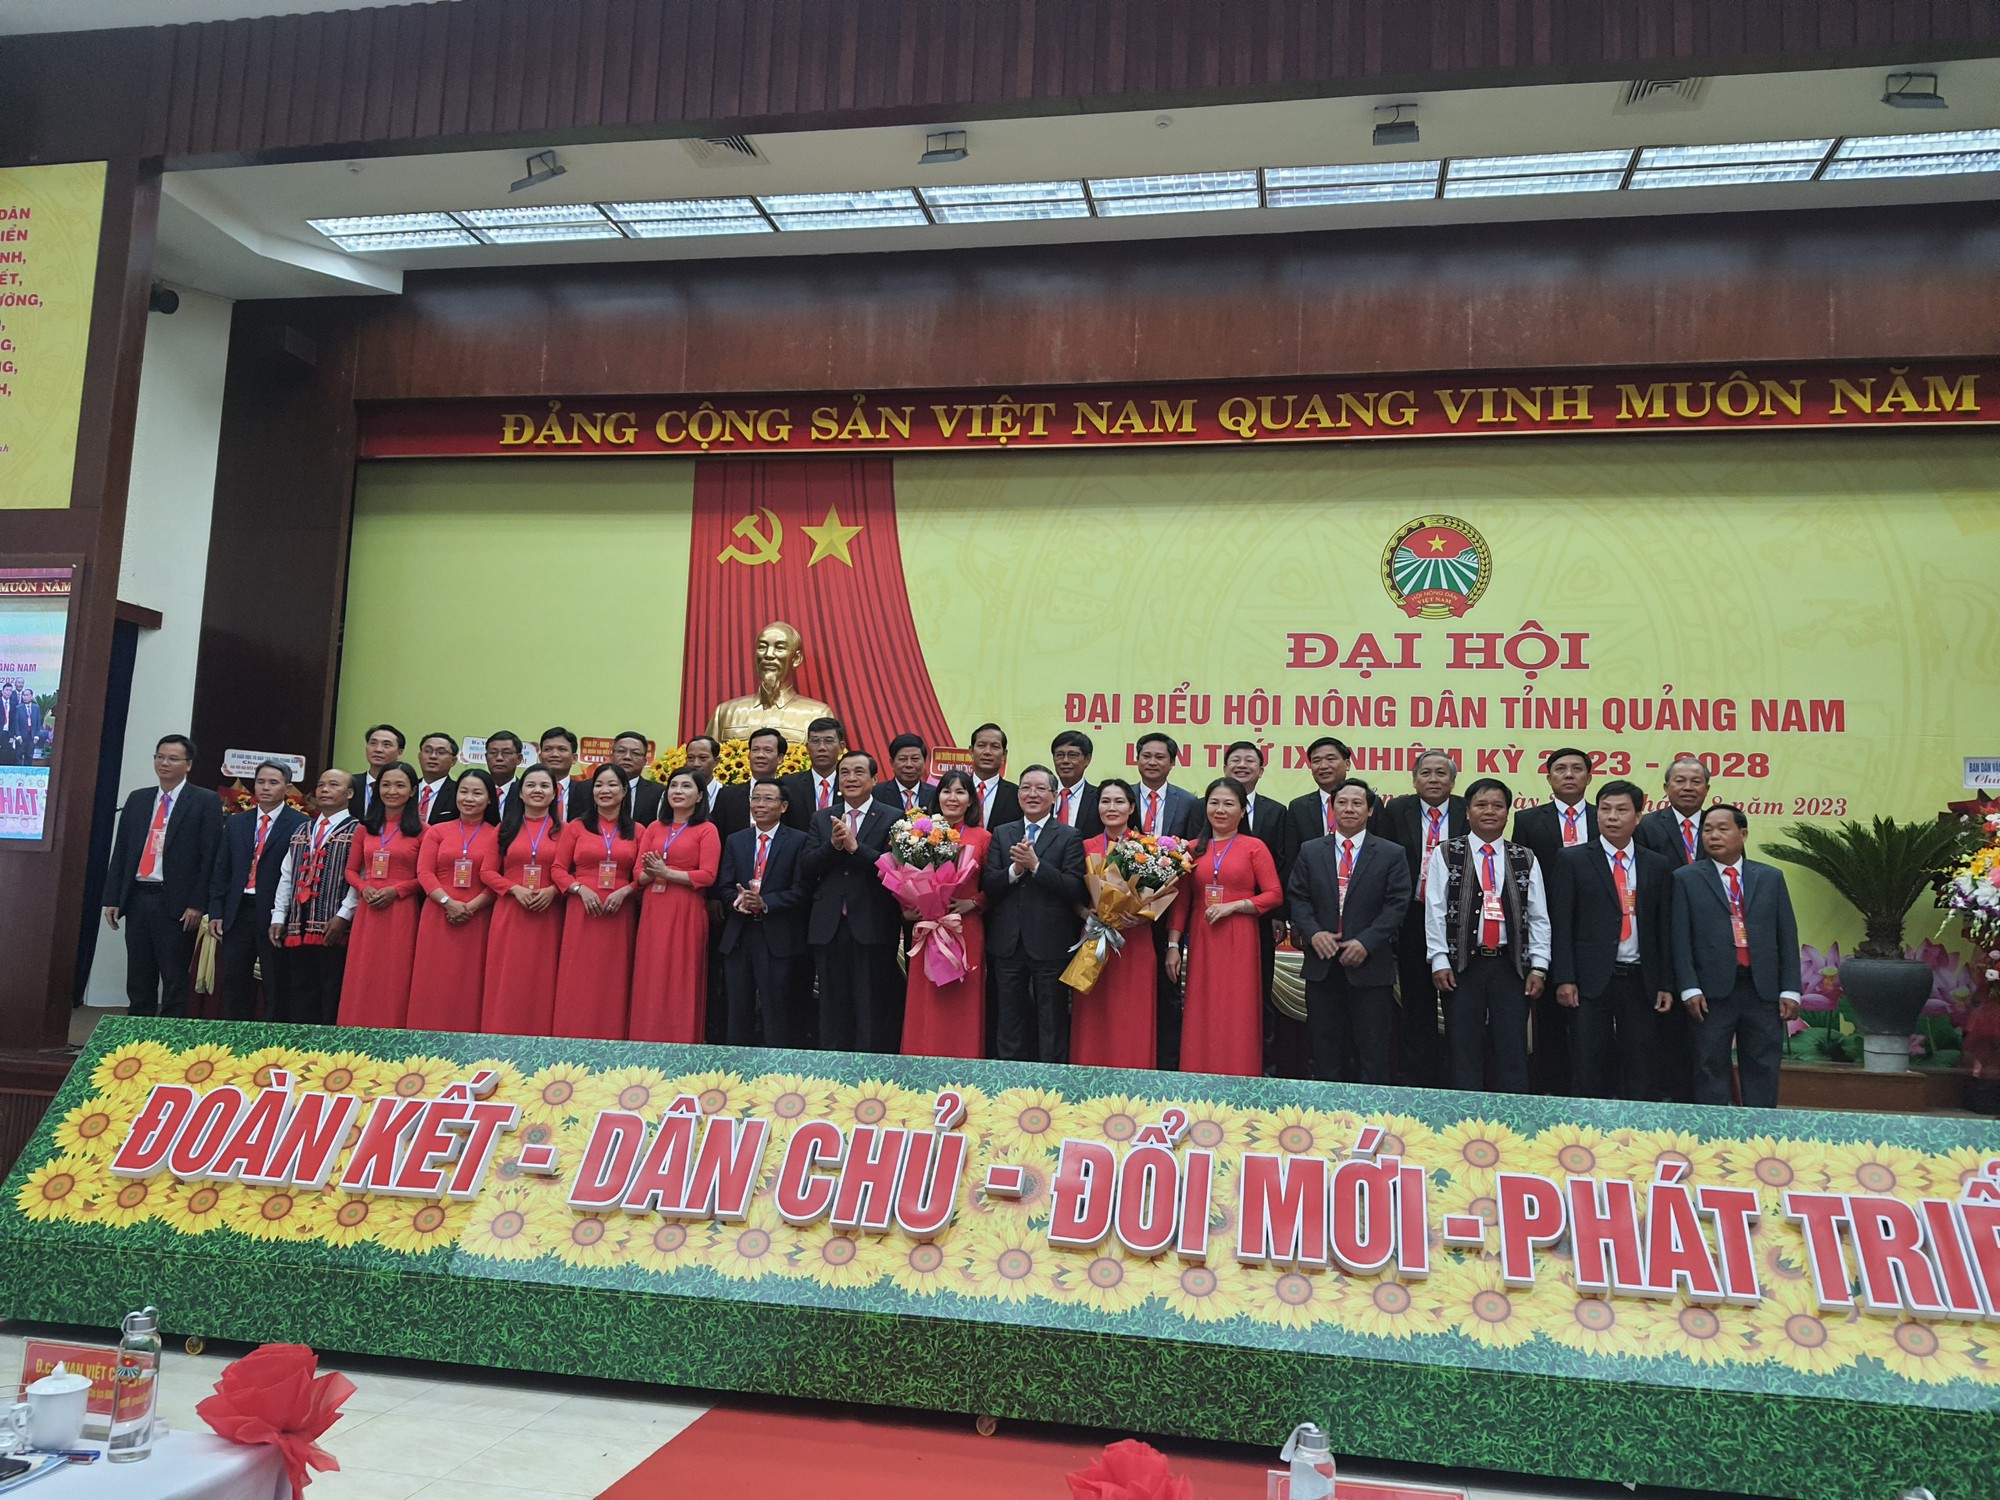 Chủ tịch BCH TƯ Hội NDVN Lương Quốc Đoàn: Hội Nông dân Quảng Nam đã củng cố và nâng cao vị thế - Ảnh 2.